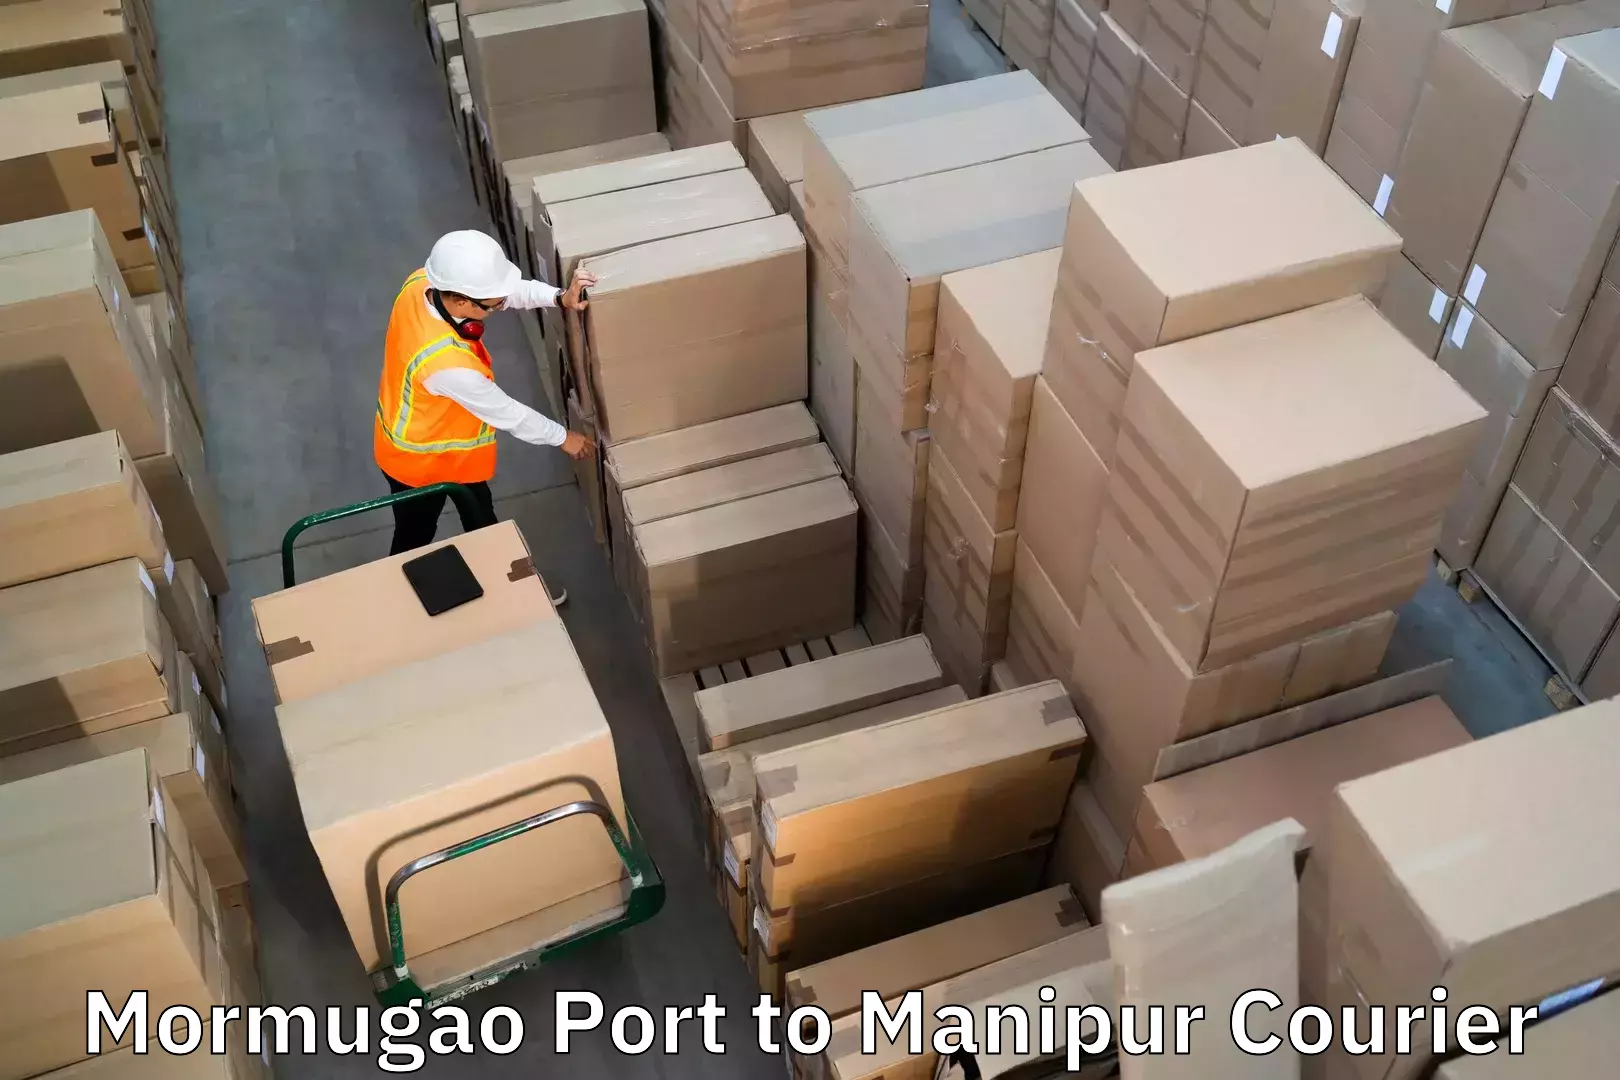 Luggage transport company Mormugao Port to Senapati